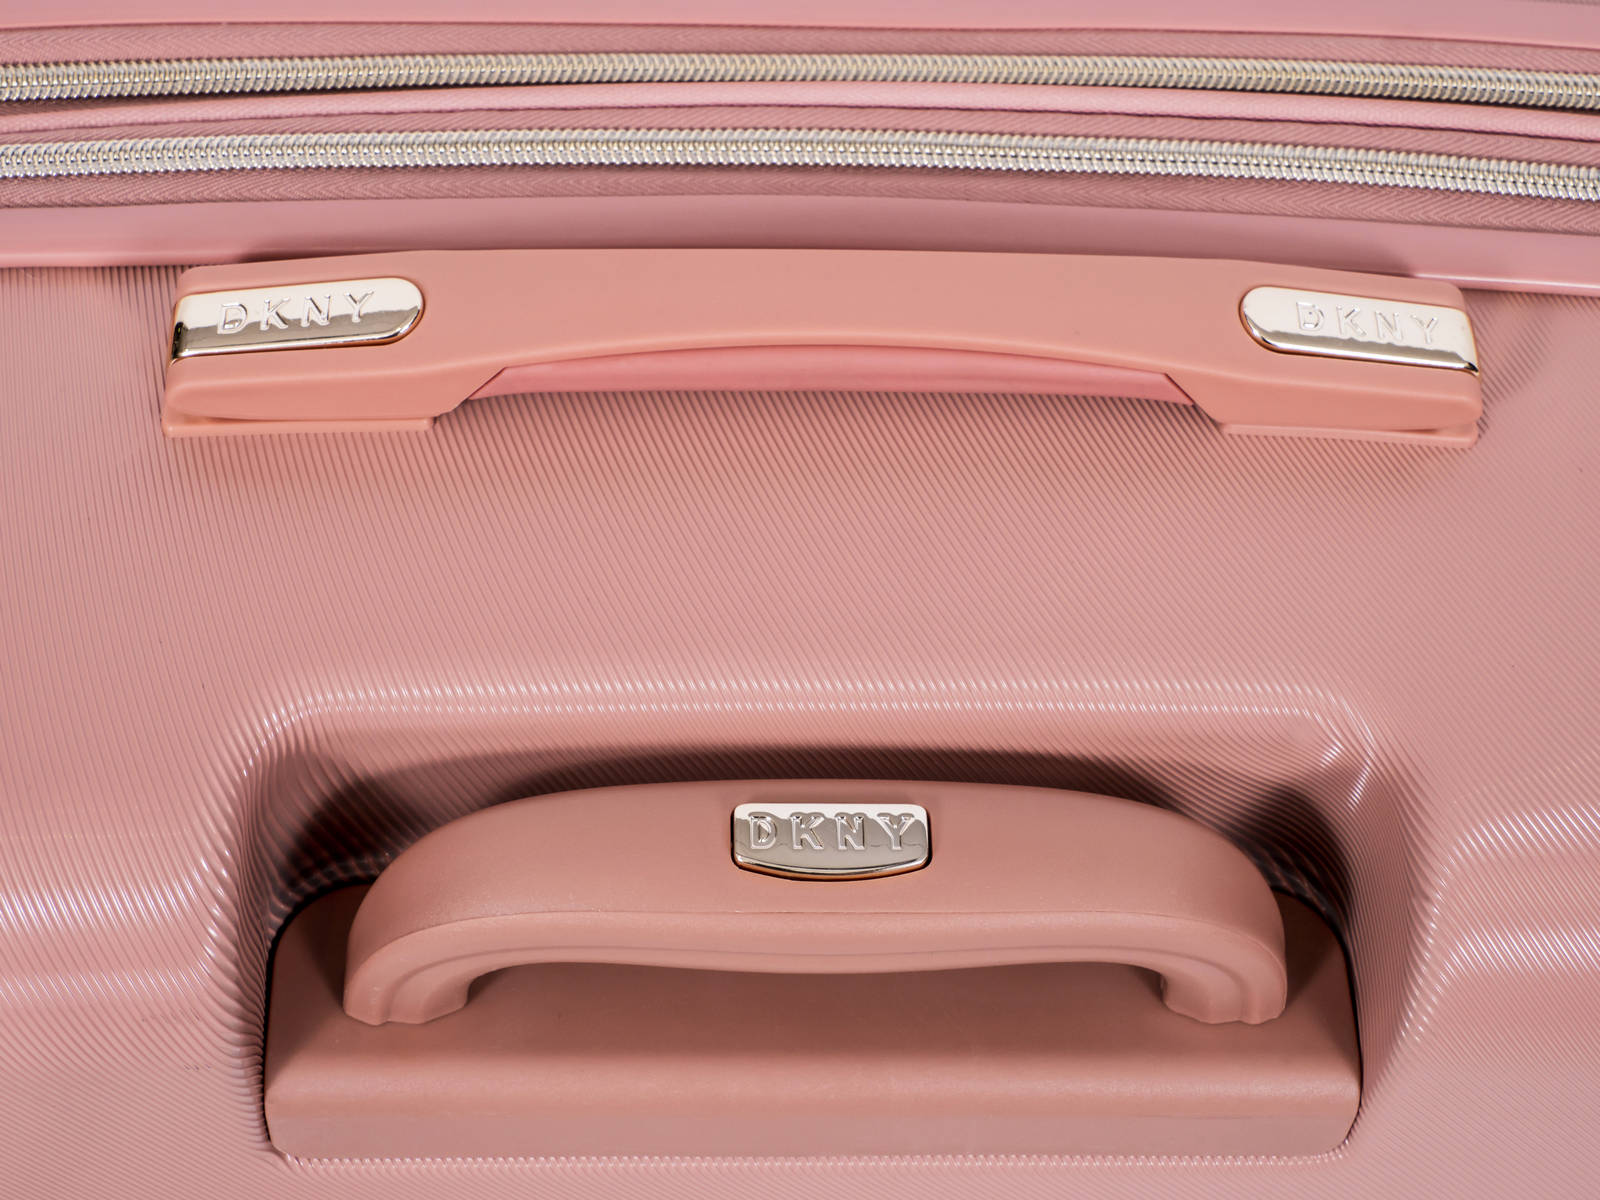 ✮✮בלעדי בישראל✮✮ מזוודה גדולה 28" אופנתית מבית מעצבת העל Donna Karan DKNY דגם SIX FOUR ONE